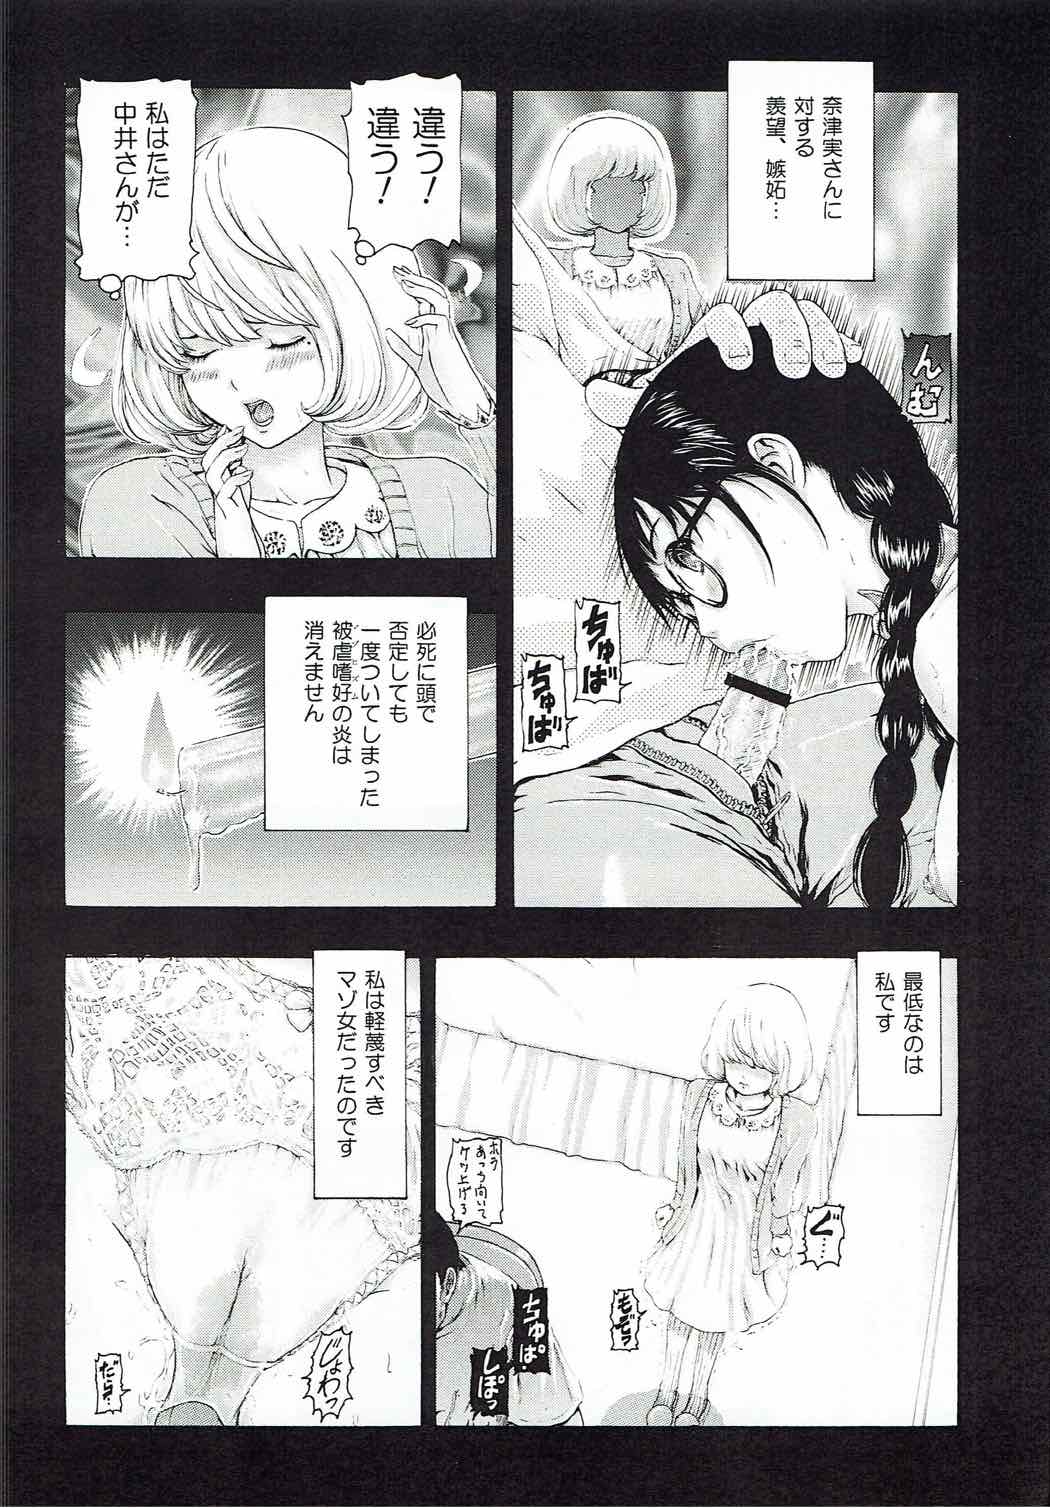 [け゜ぴけ゜ぴ (ぬャカな)] MANKOKU漫画家(とアシスタント)残酷物語 (バクマン。)